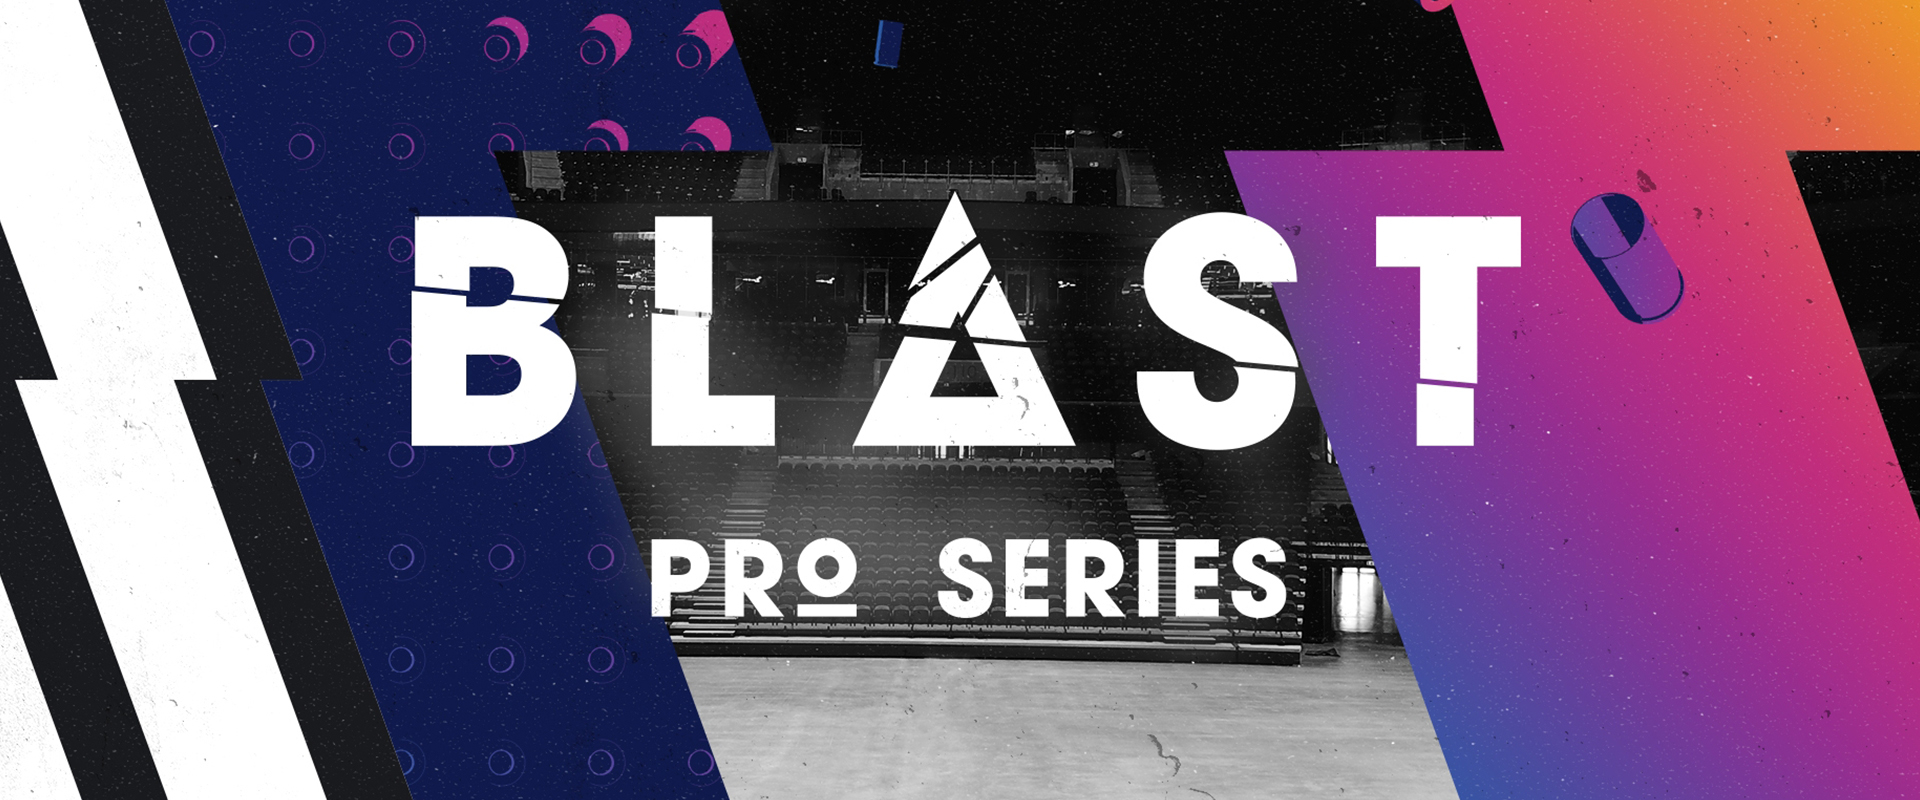 Bemutatkozik a BLAST Pro Series, az eddigi leginnovatívabb CS:GO verseny!